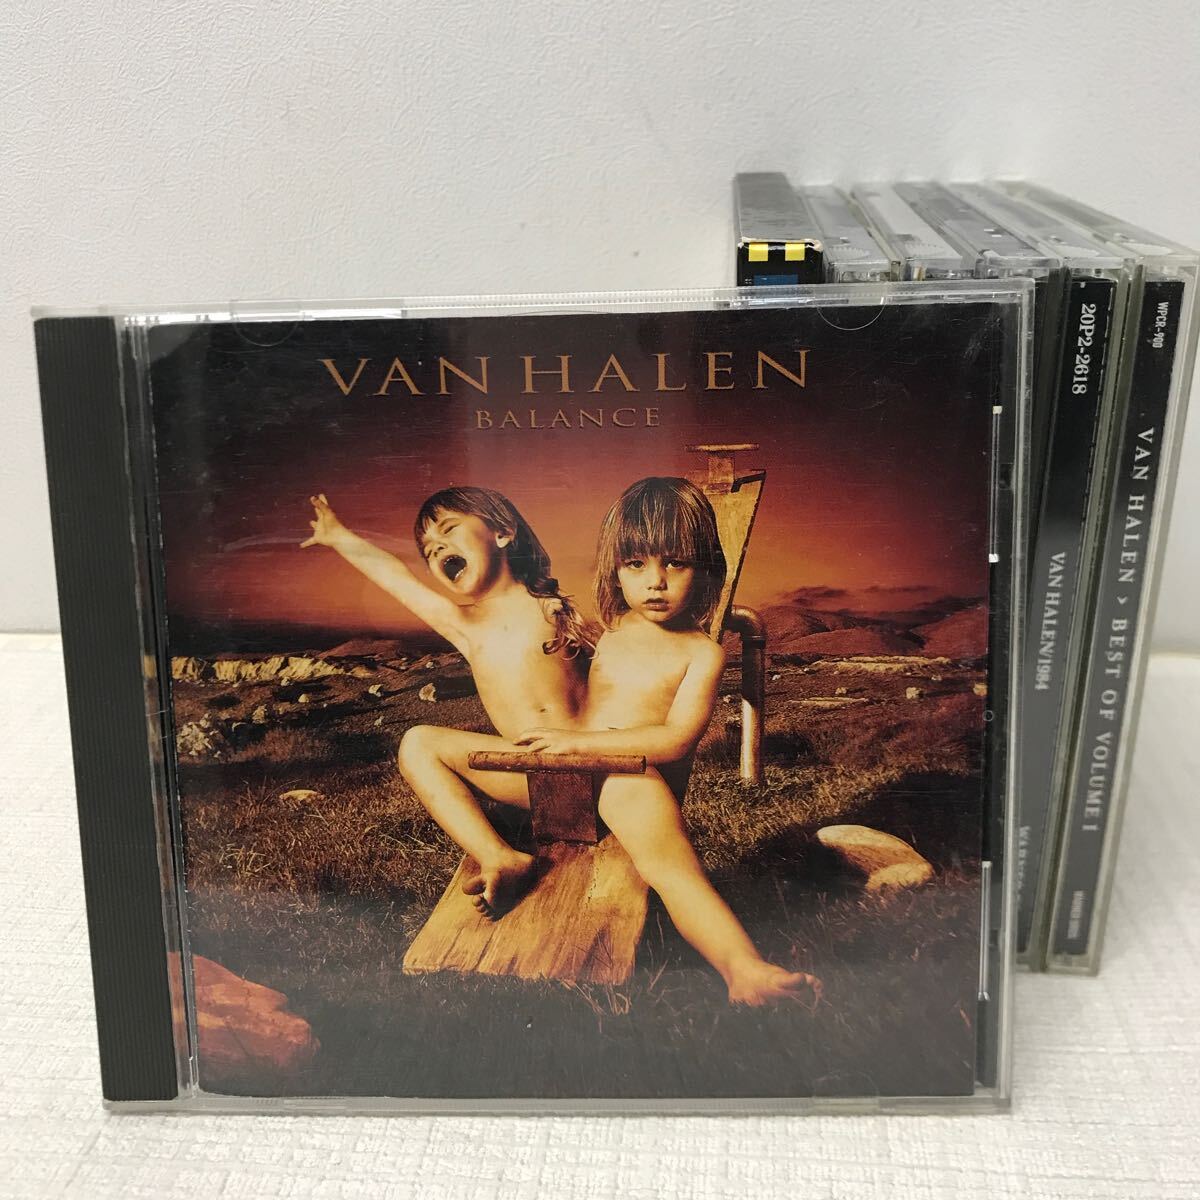 I0415E3 суммировать *VAN HALEN Van * разделение Len CD 7 шт комплект музыка западная музыка блокировка / 1984 /.. . огонь линия / BALANCE / 5150 / LIVE IN U.S.A др. 